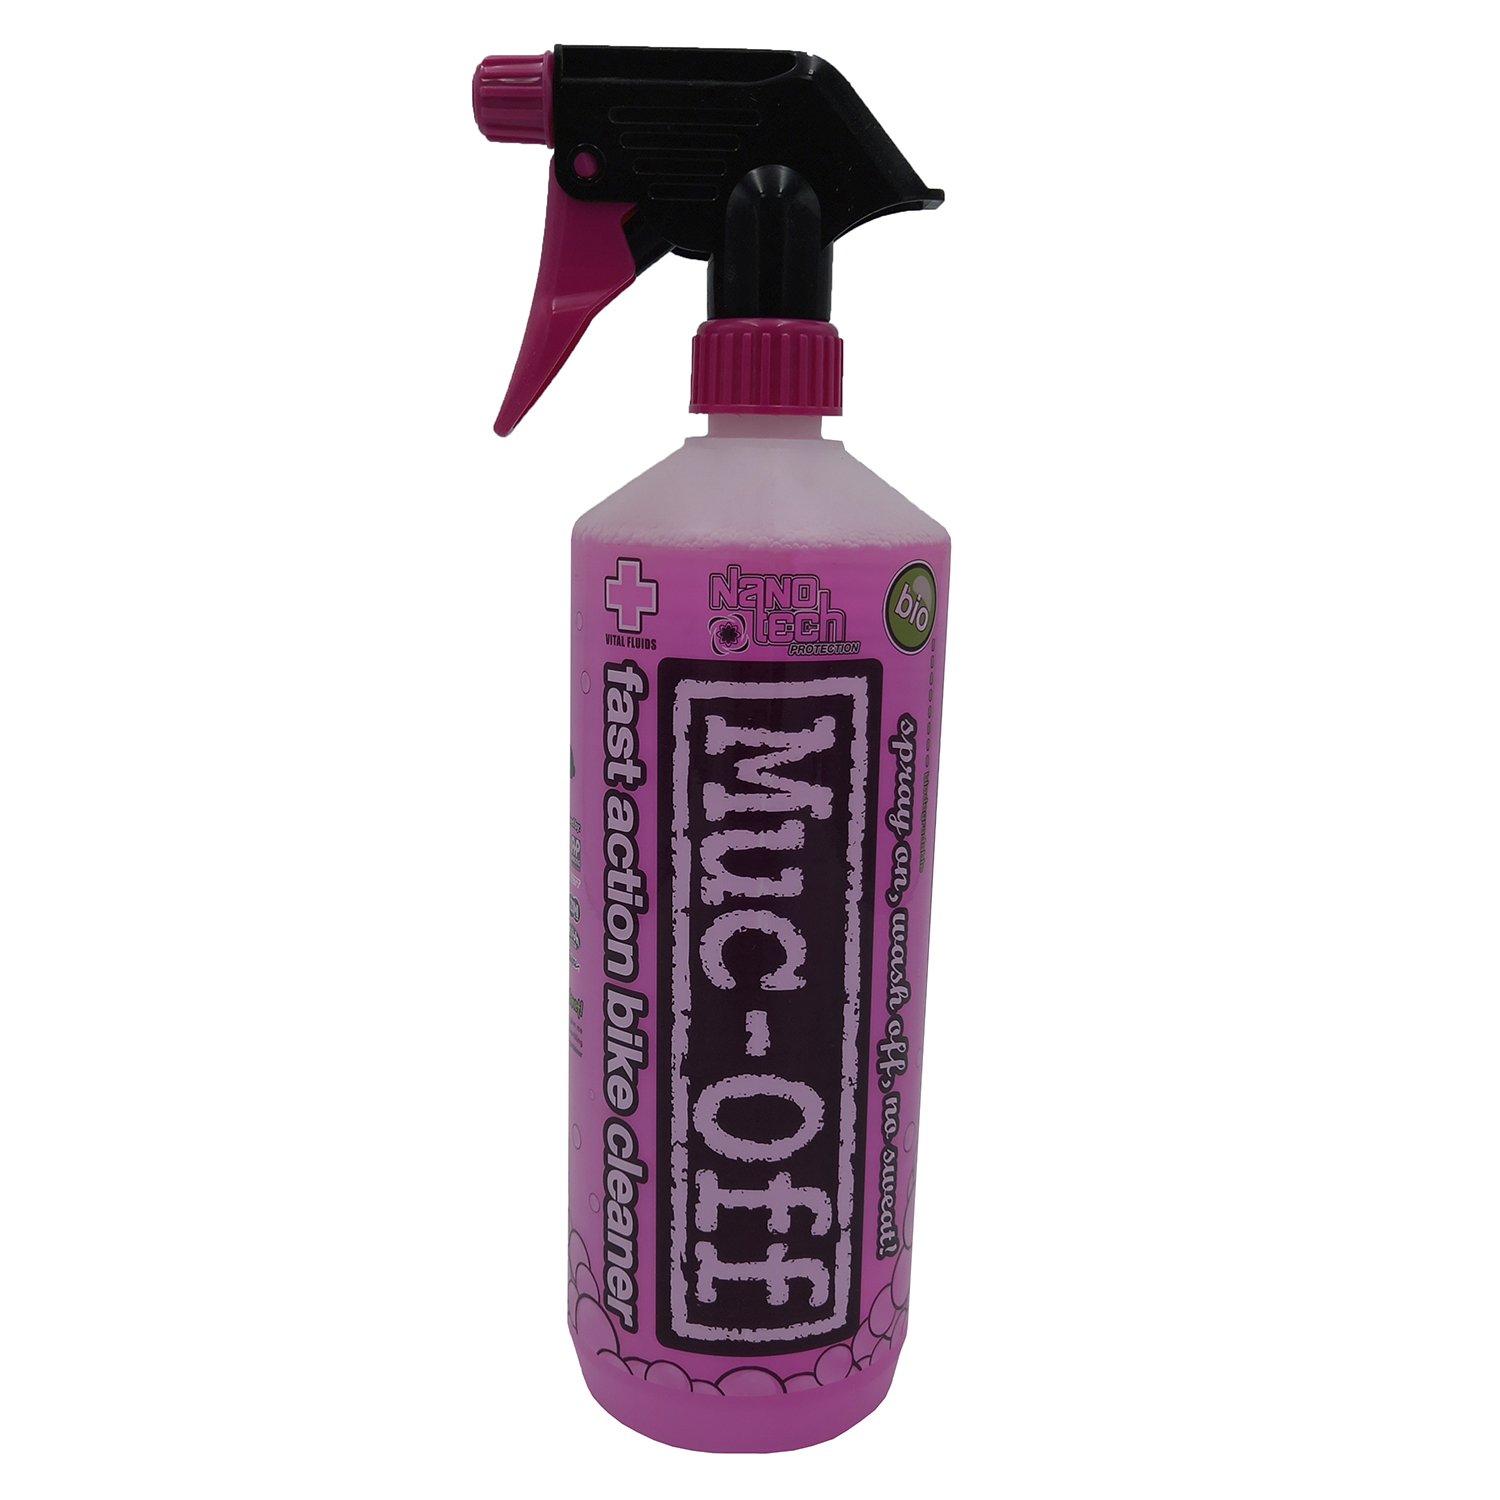 Очиститель MUC-OFF 2015 NANO-TECH BIKE CLEANER, универсальный, 1л, 904 очиститель muc off 2015 nano grit hand gel cleaner для рук 356